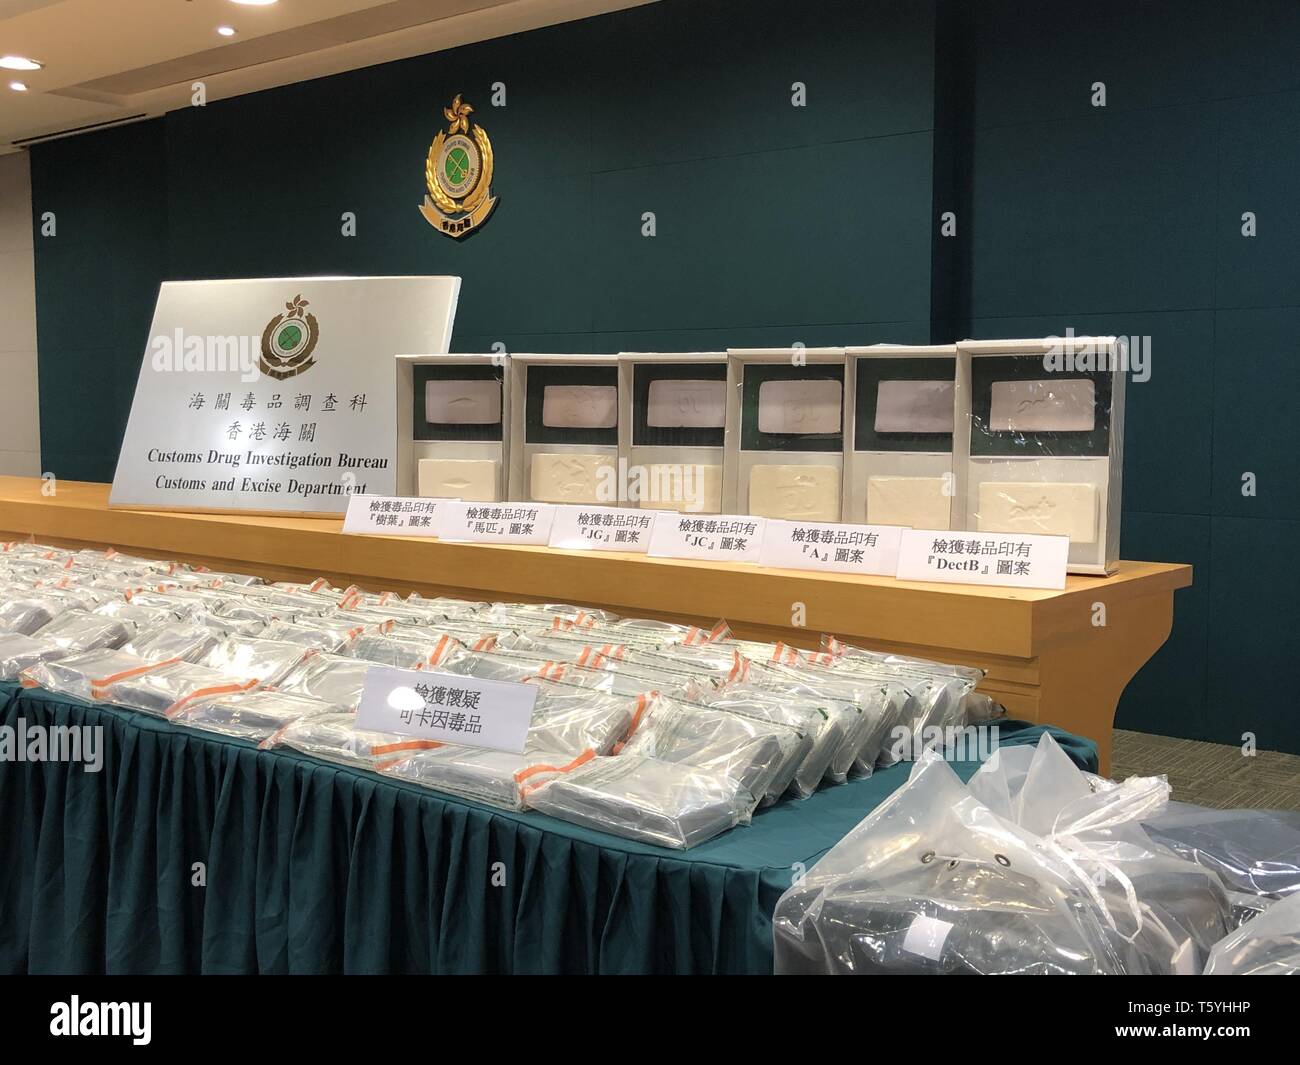 Hong Kong. Apr 28, 2019. Les drogues saisies sont affichées lors d'une conférence de presse par les coutumes de la Région administrative spéciale de Hong Kong (RASHK) dans le sud de la Chine, Hong Kong, le 27 avril 2019. Un total de 250 kilogrammes de cocaïne présumée a été saisi jeudi à Hong Kong Kowloon du centre-ville, un record dans la ville saisie de drogues, et deux hommes ont été arrêtés. L'annonce a été faite samedi par le service des douanes de la Région administrative spéciale de Hong Kong (RASHK). Source : Xinhua/Alamy Live News Banque D'Images